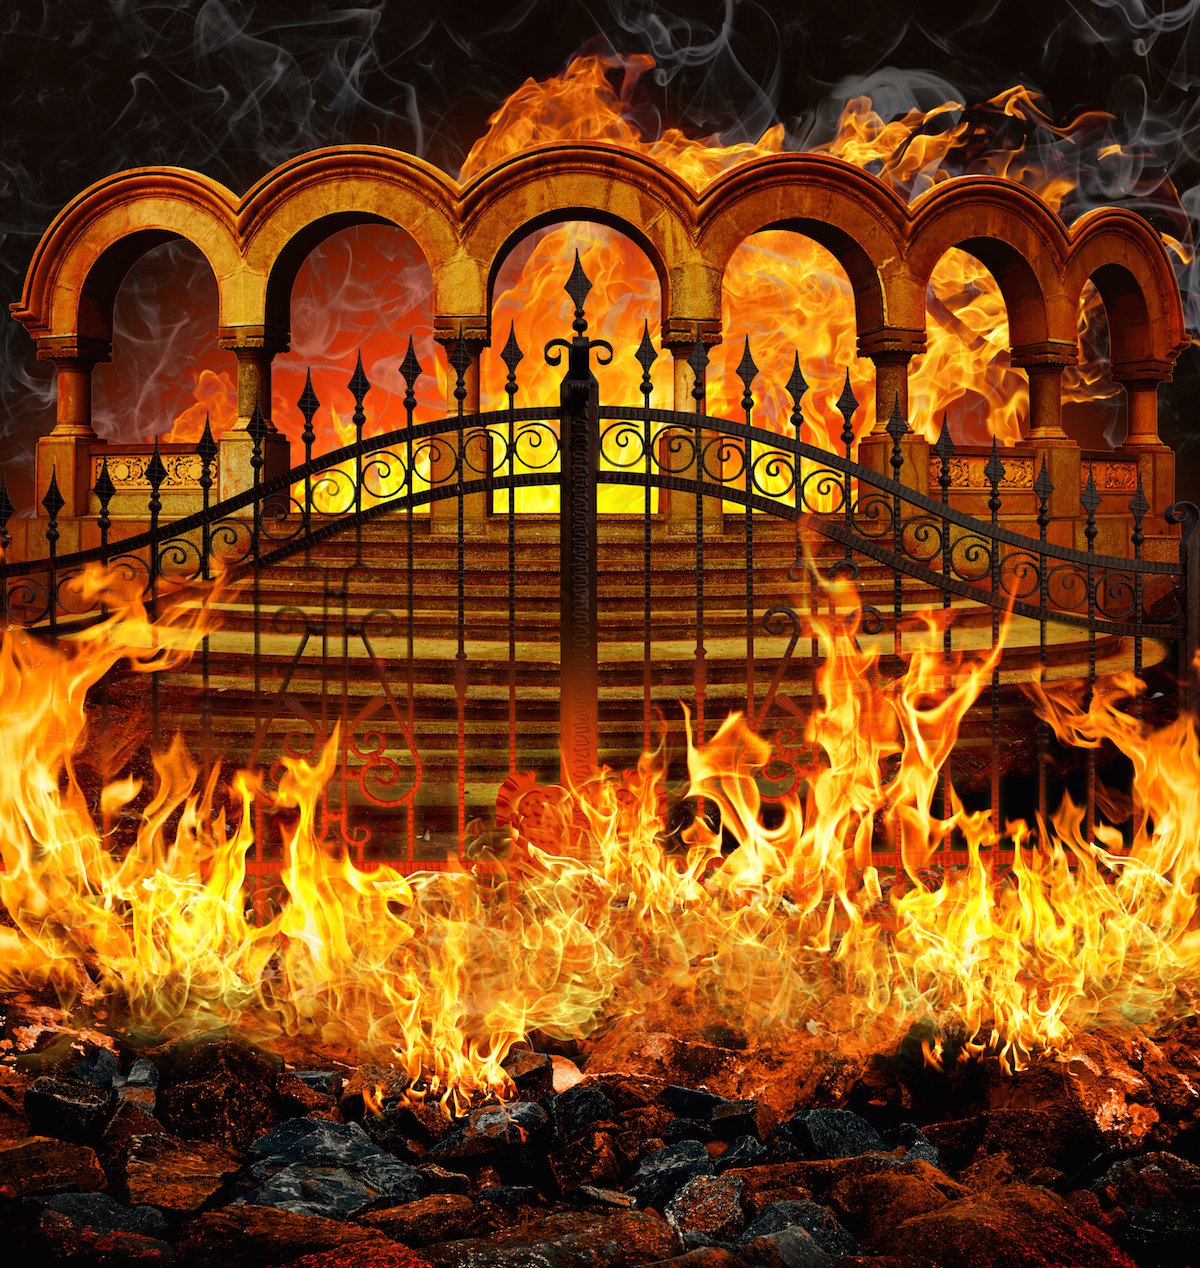 3daa4-gates-of-hell